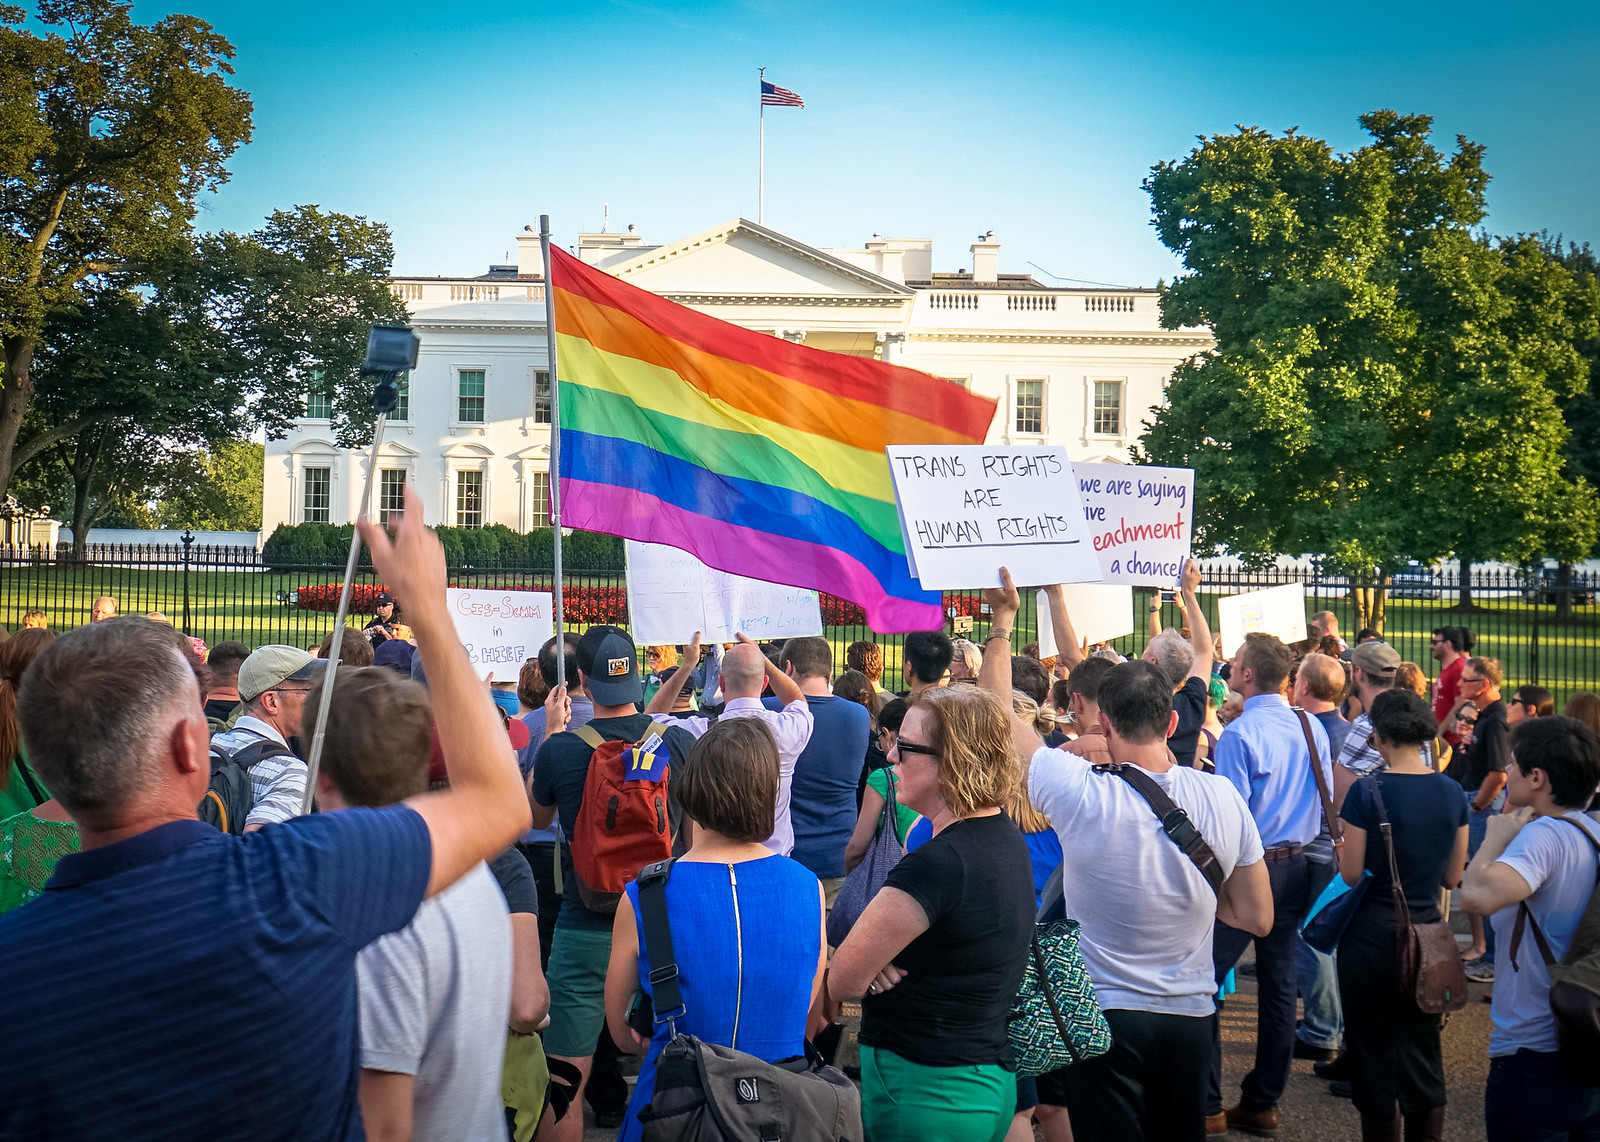 2017.07.26 Protest Trans Military Ban, White House, Washington DC USA 7646